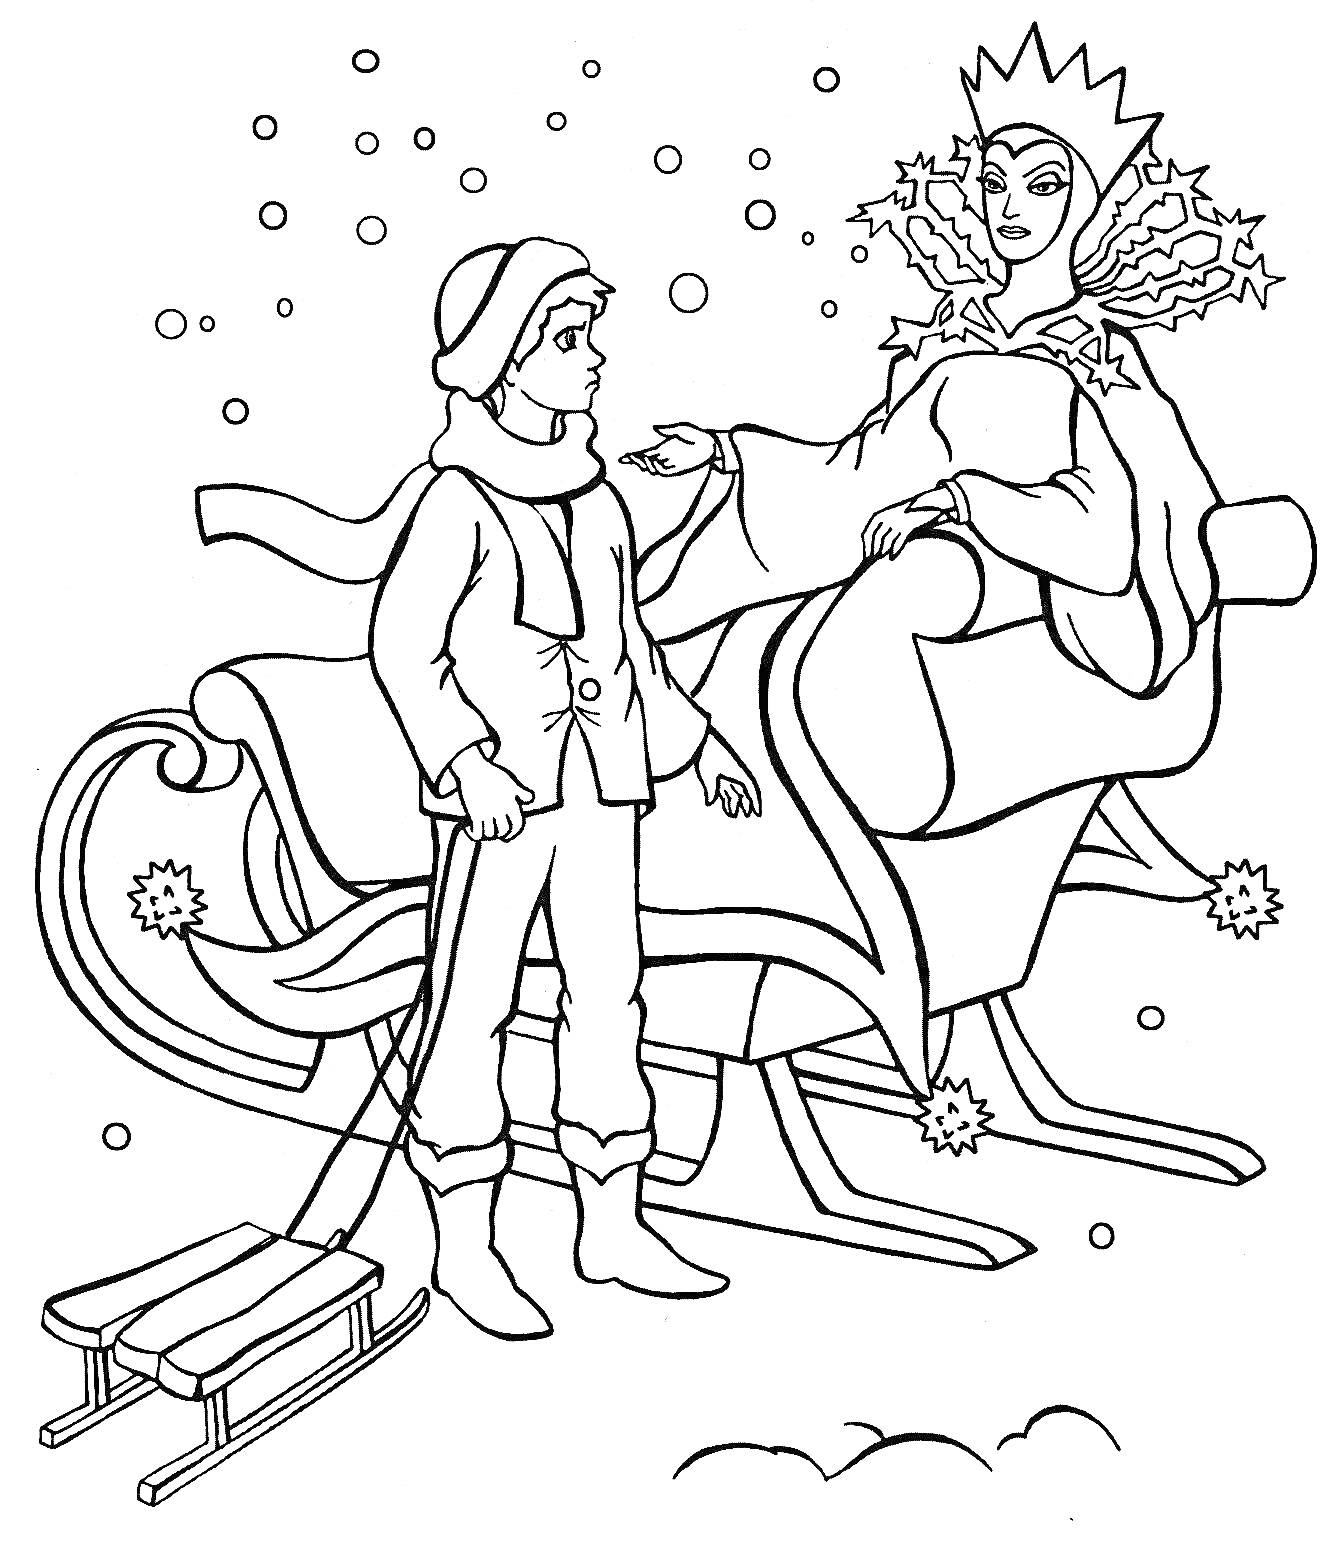 Снежная королева в санях, мальчик в зимней одежде с санками, снежинки